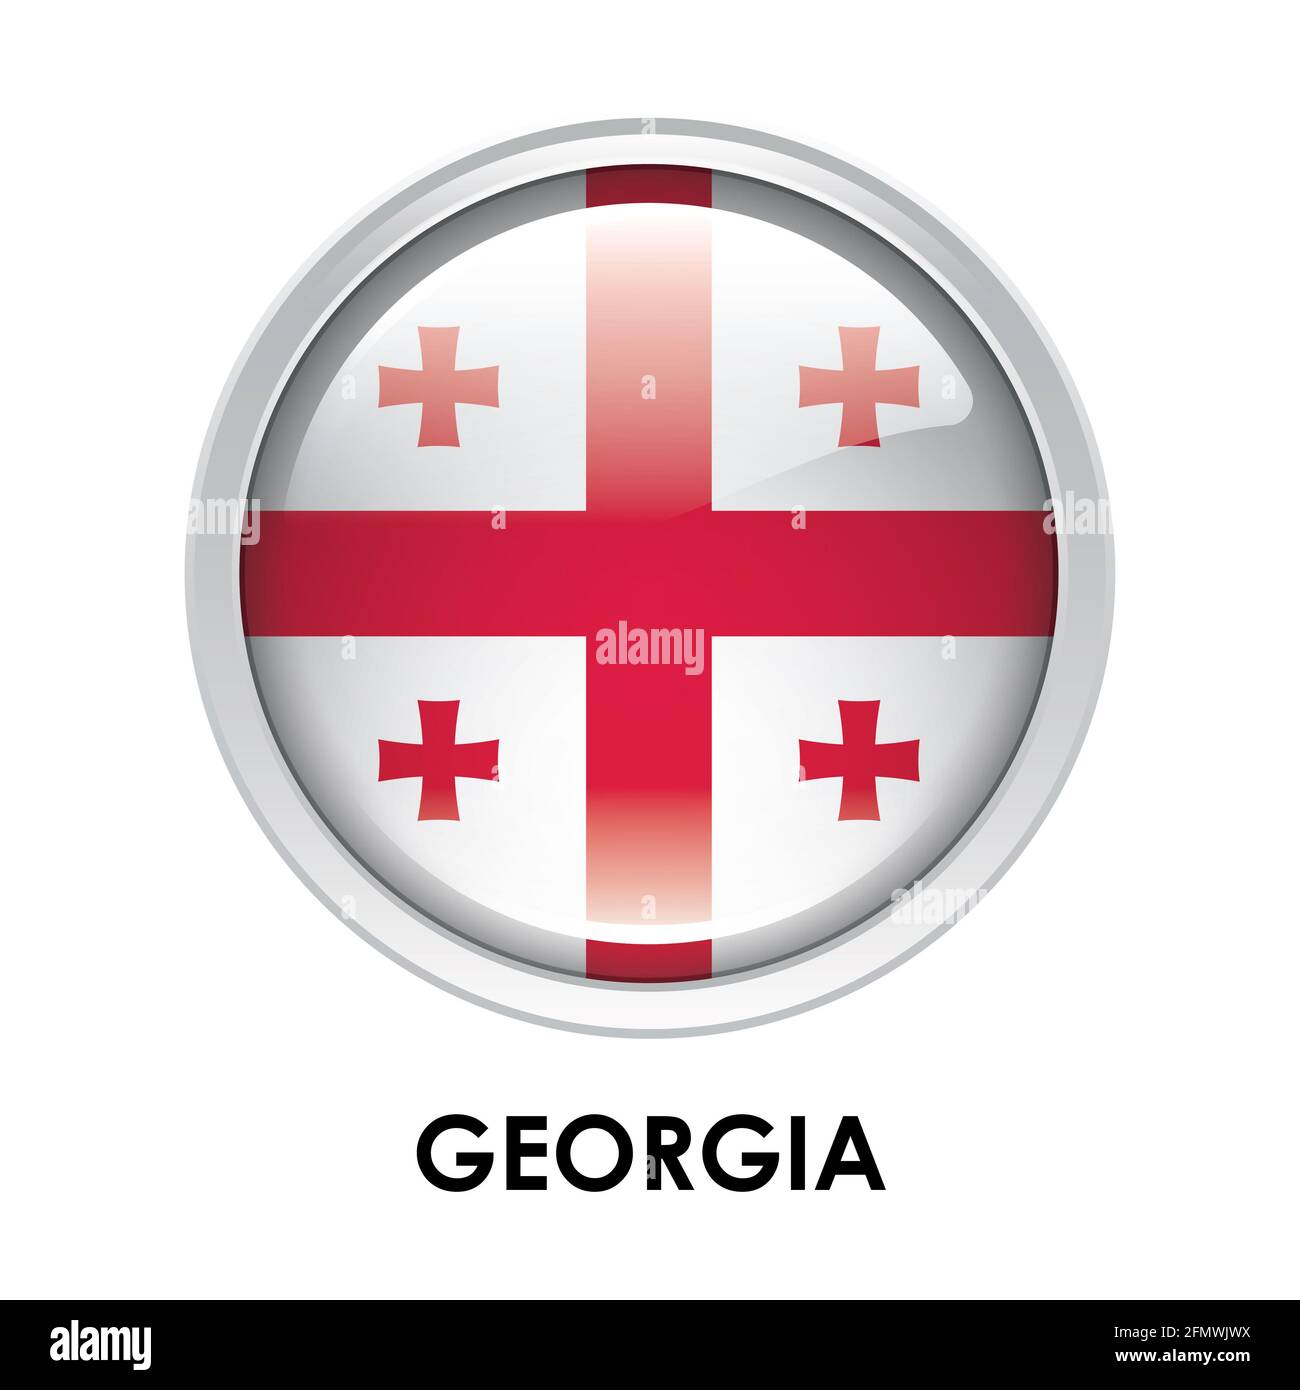 Round flag of Georgia Stock Photo